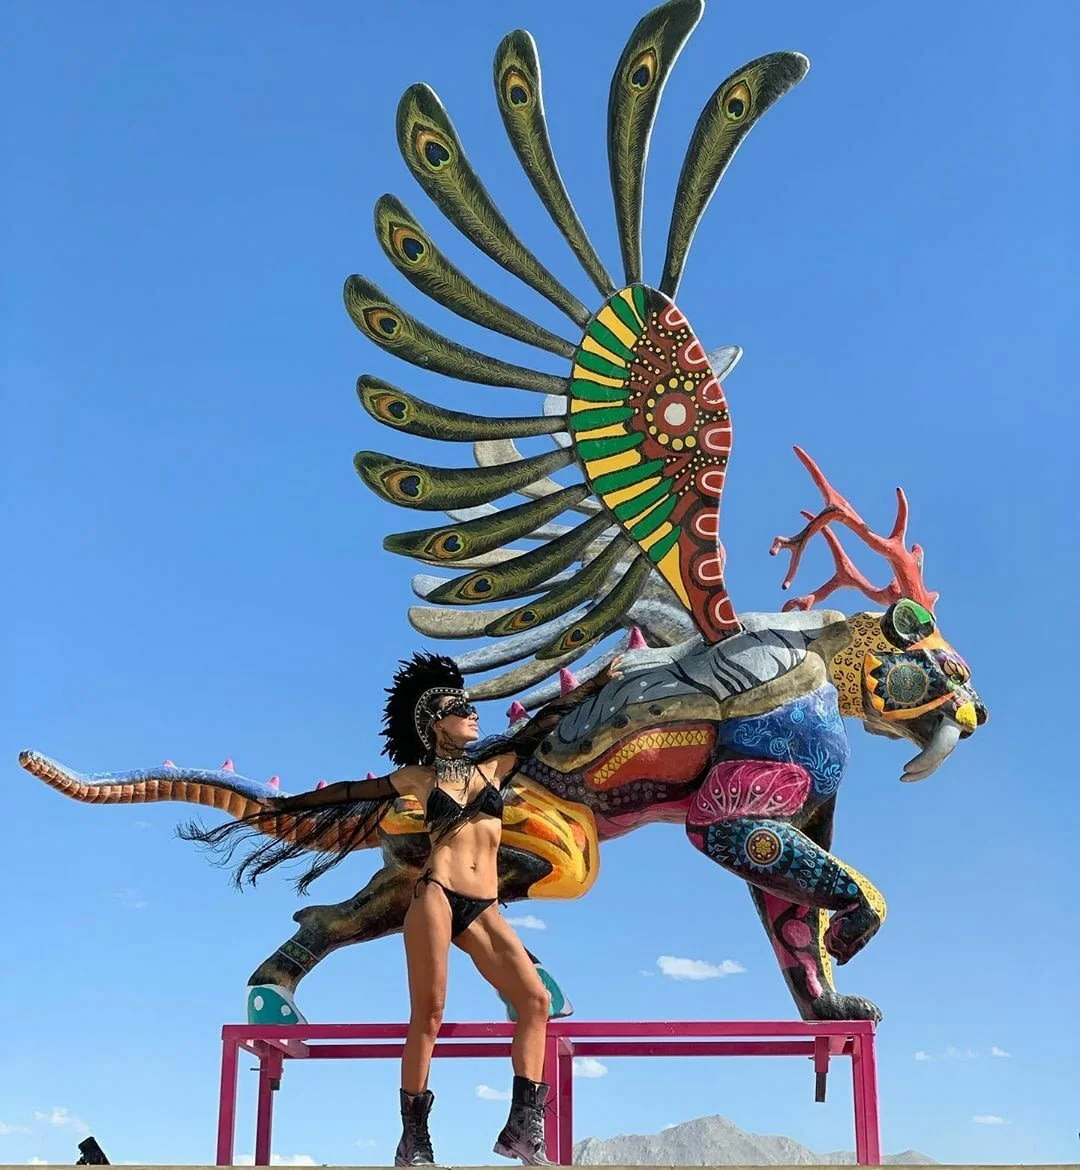 Как прошел Burning Man 2019 в фотографиях - фото 3